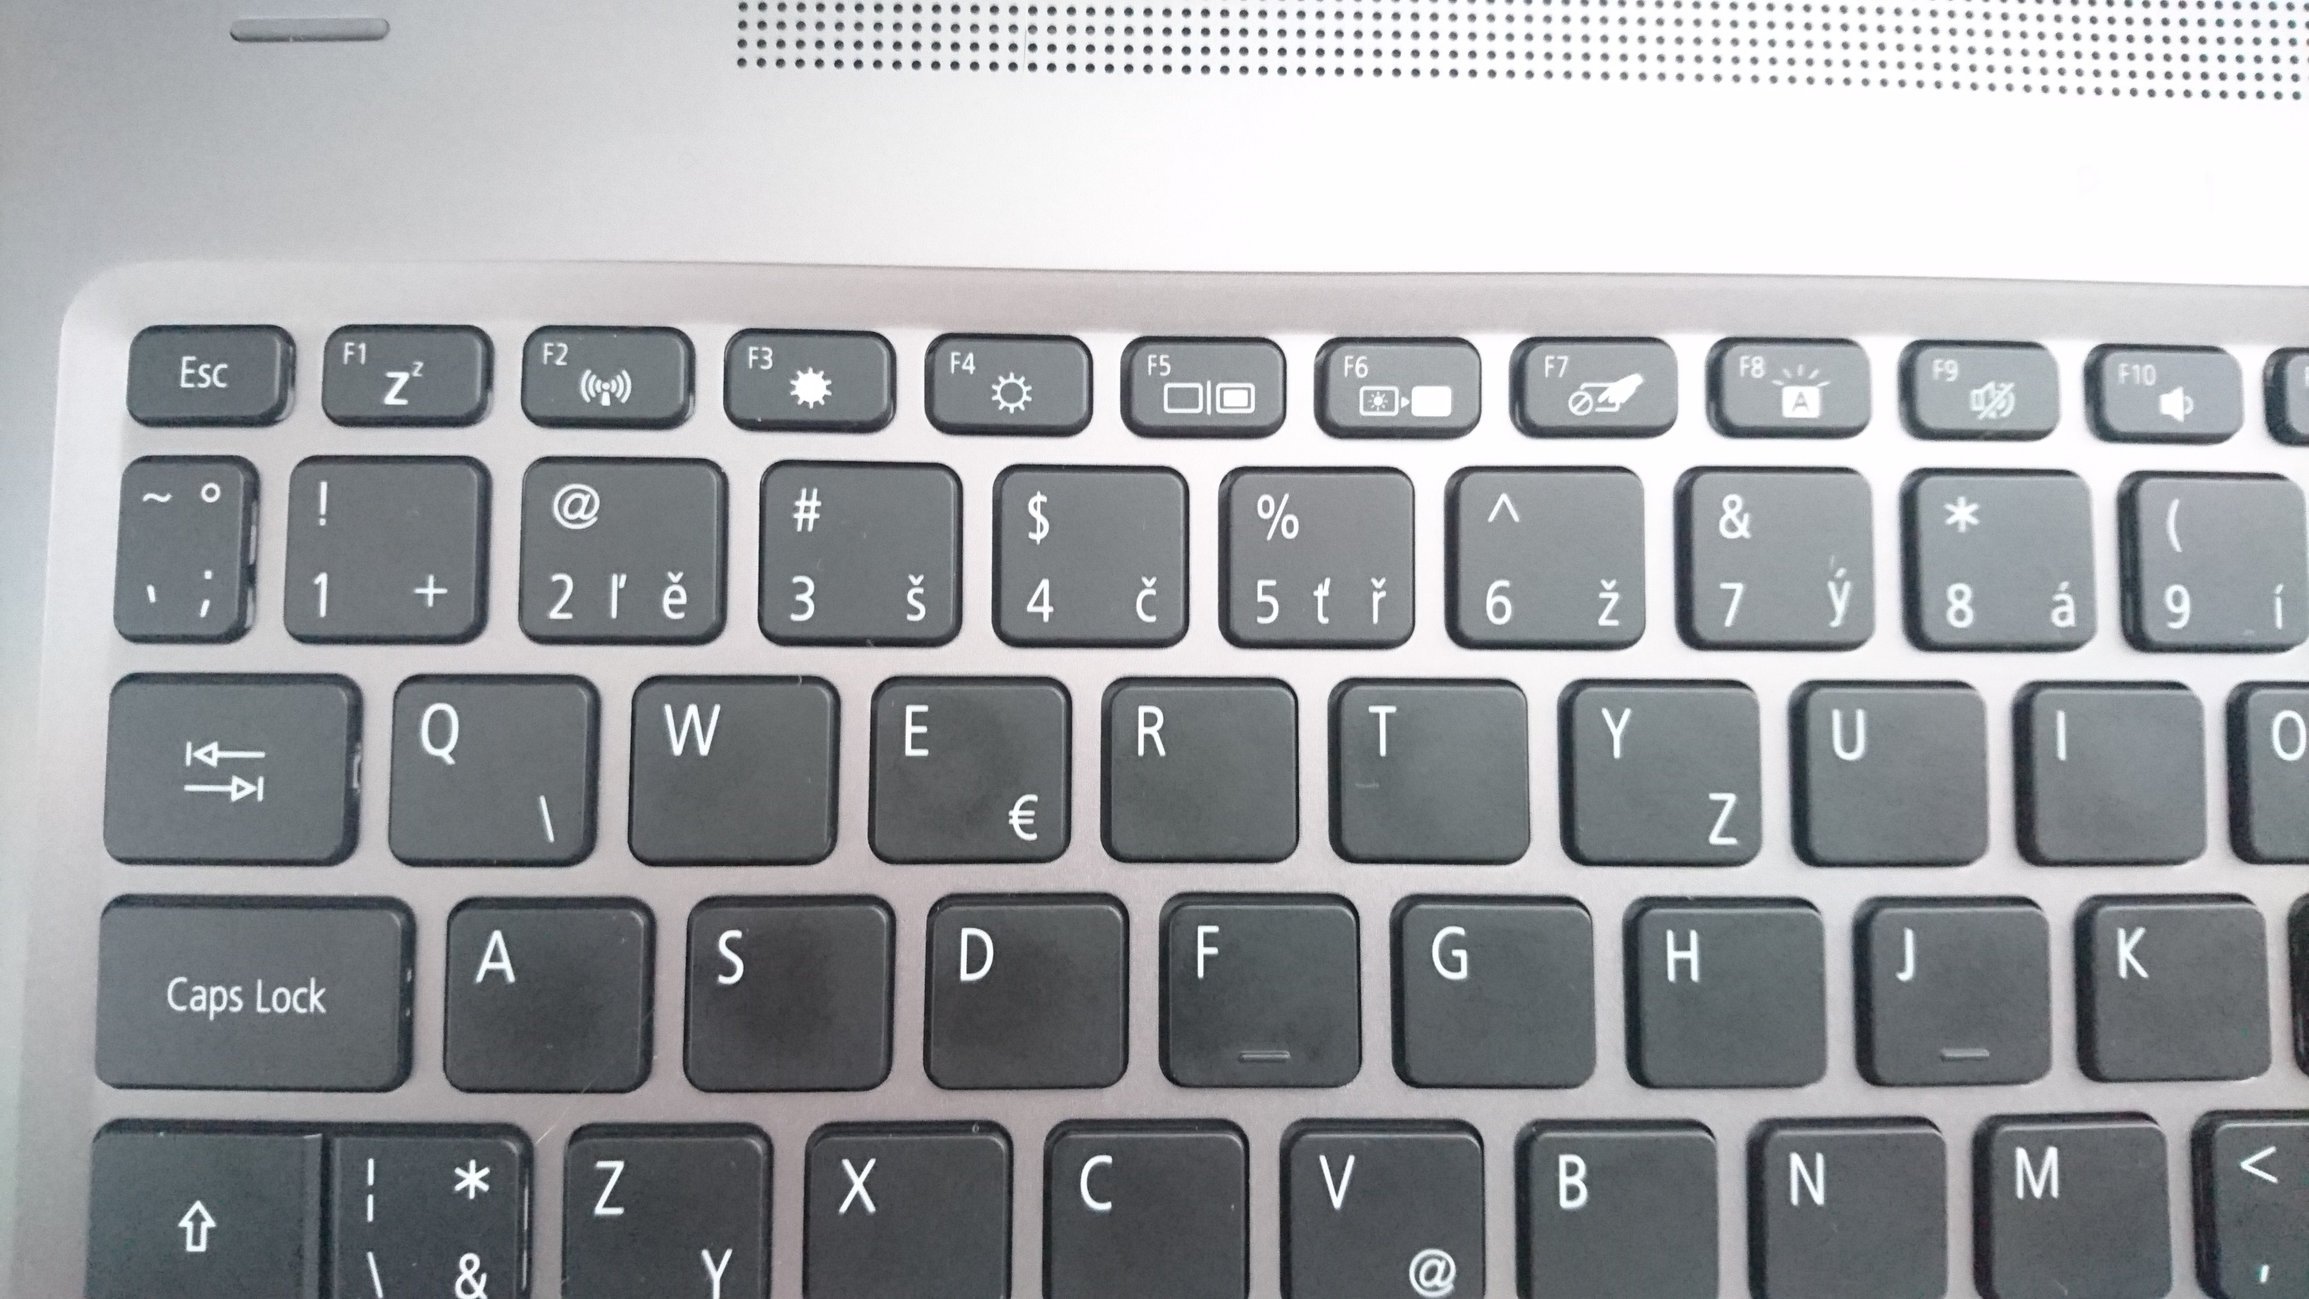 Где клавиша fn на клавиатуре компьютера фото